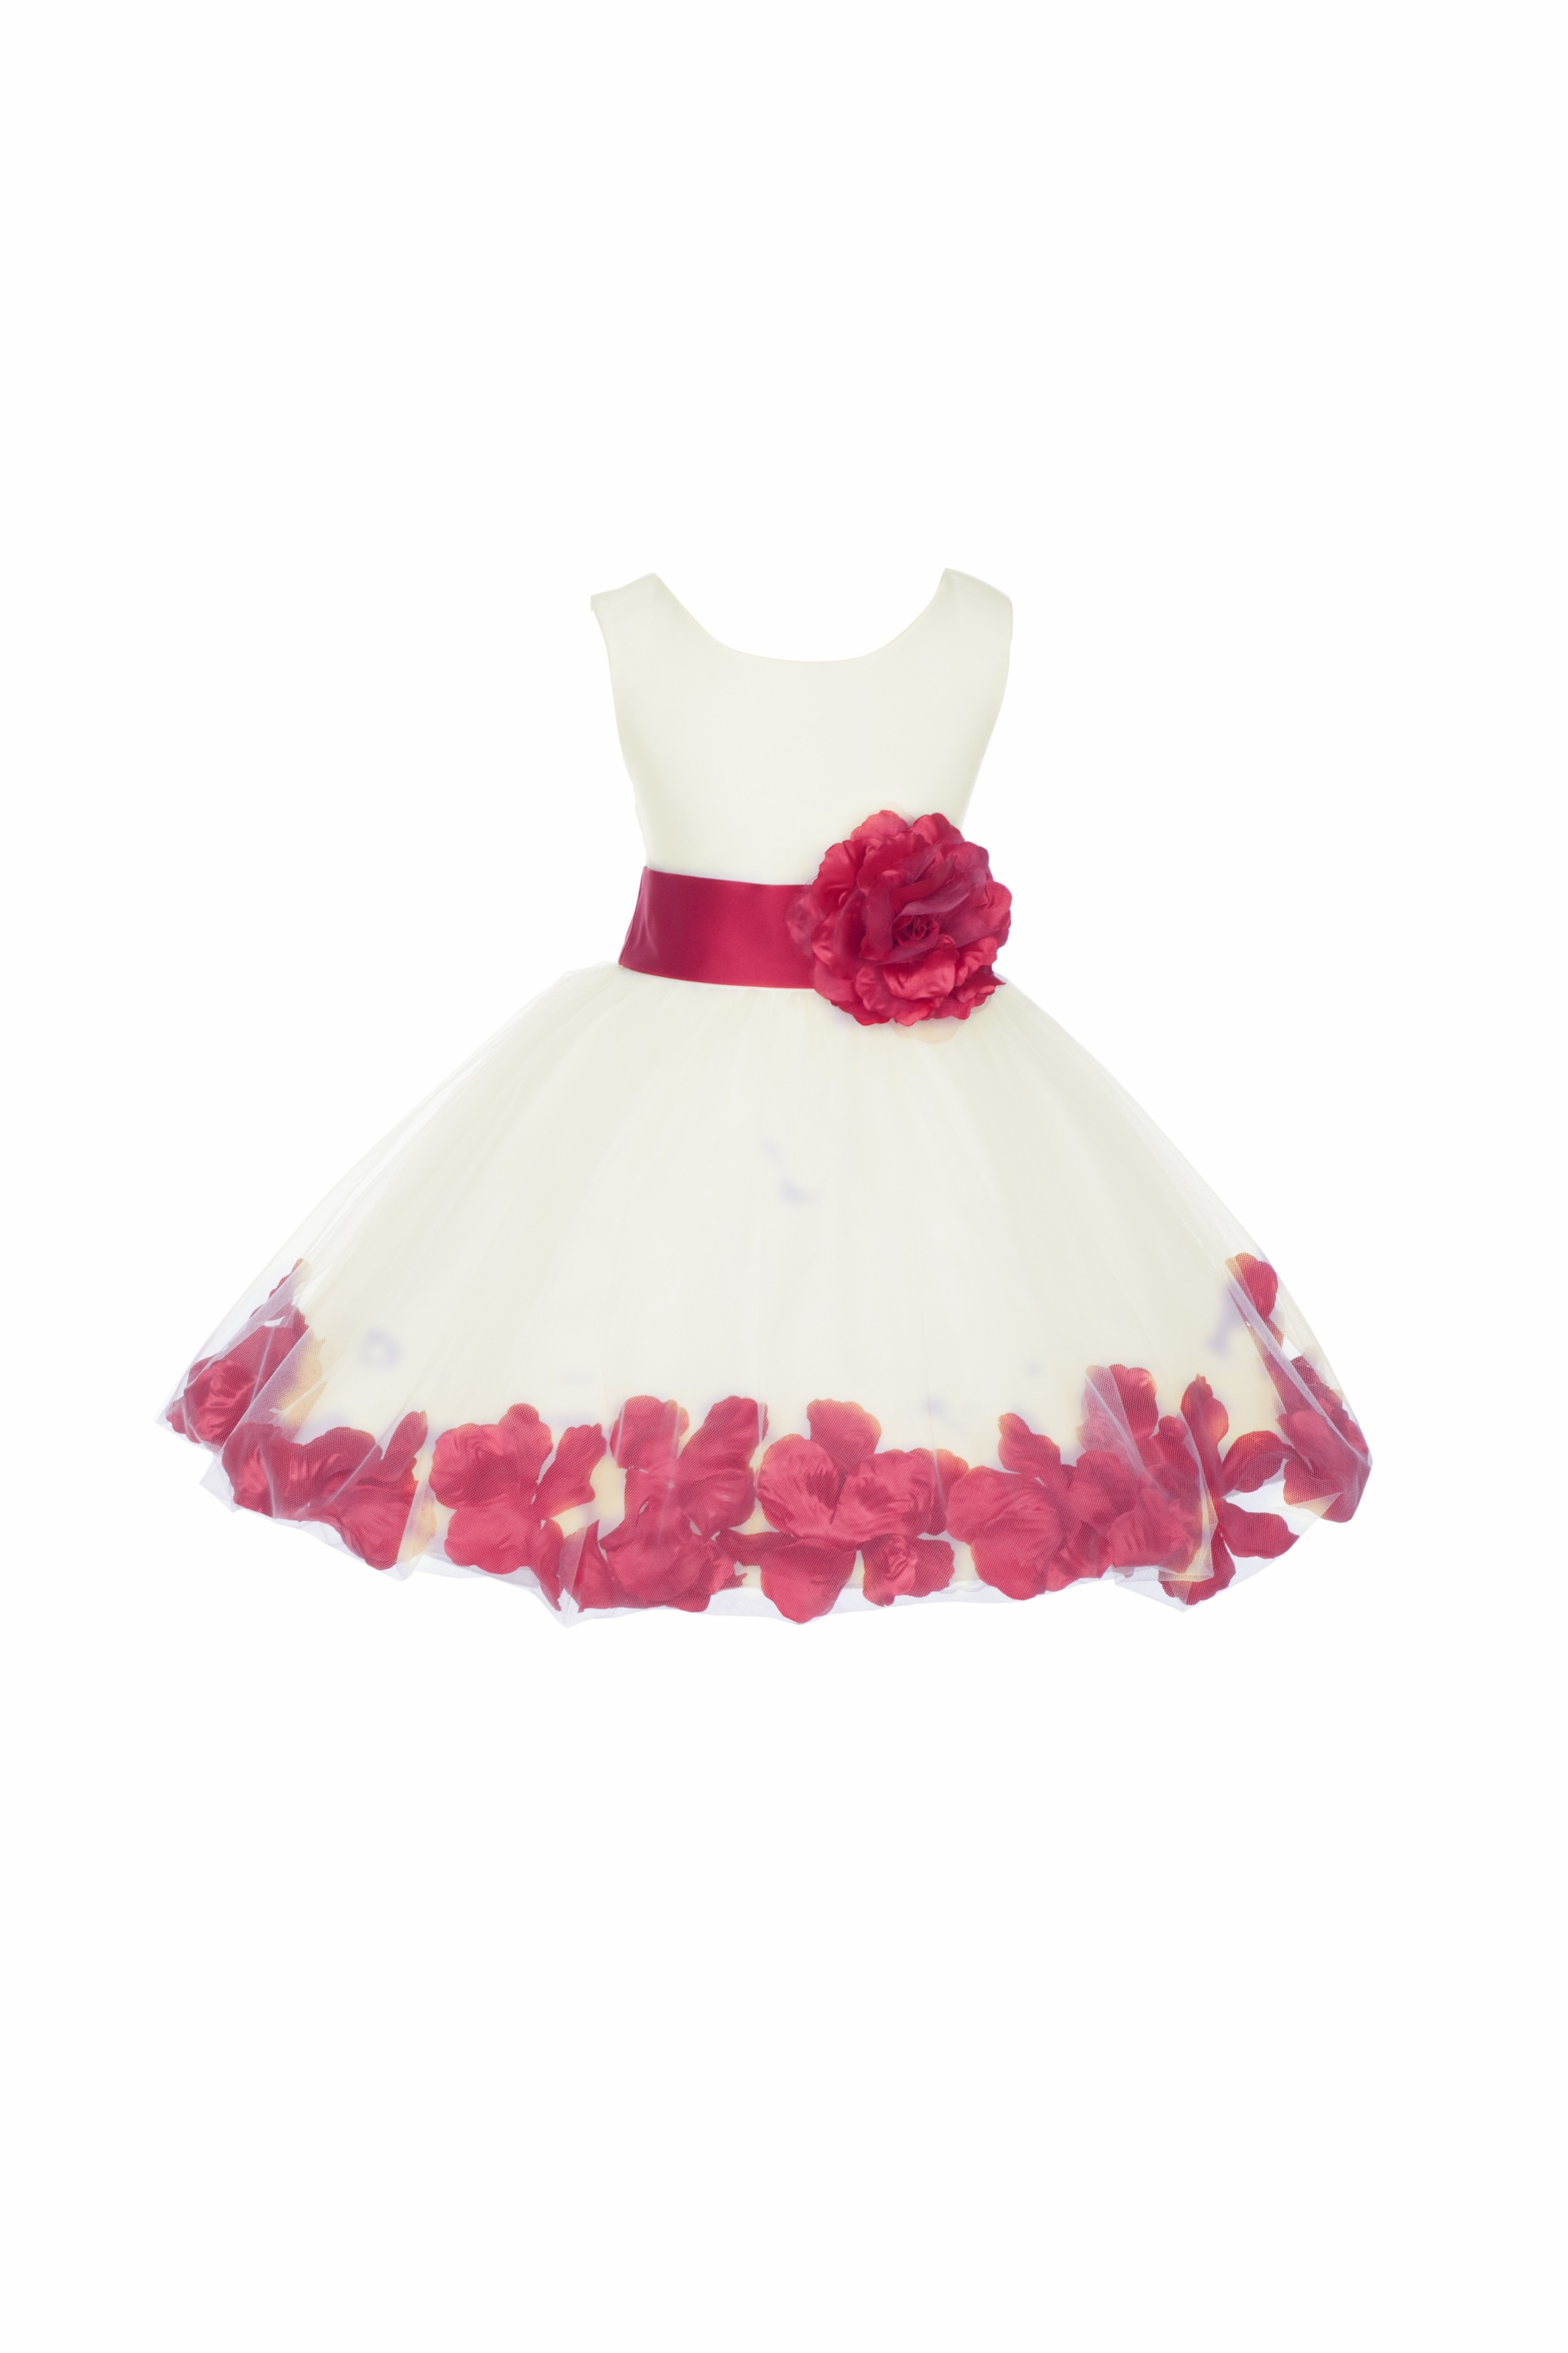 Ivory/Cherry Tulle Rose Petals Knee Length Flower Girl Dress 306S